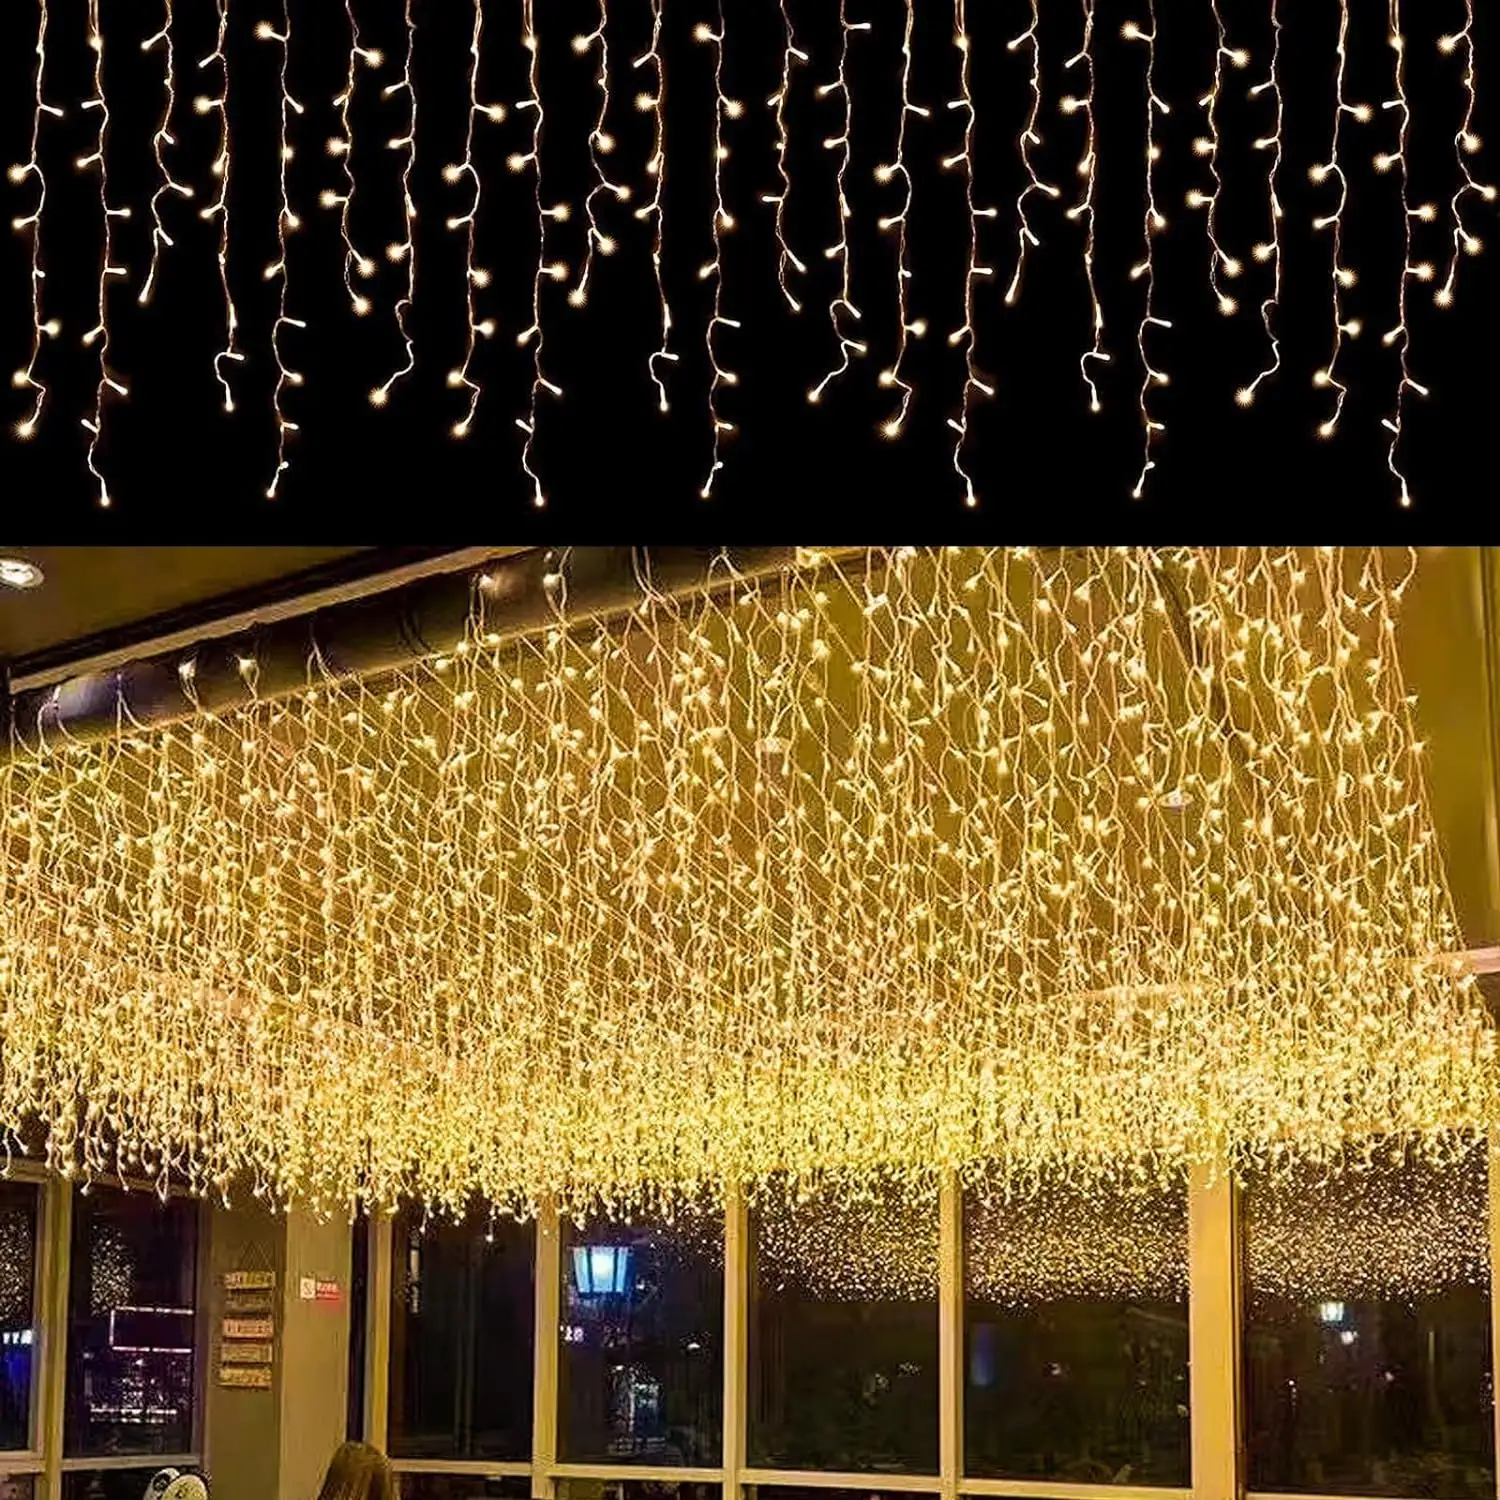 سلسلة أضواء عيد الميلاد المتميزة المتميزة بتقنية الليد المتميزة بطبقة أضواء سلاسل أضواء يمكن إطالة ستارة بها 8 أوضاع إضاءة متدلية ومشرقة معلقة